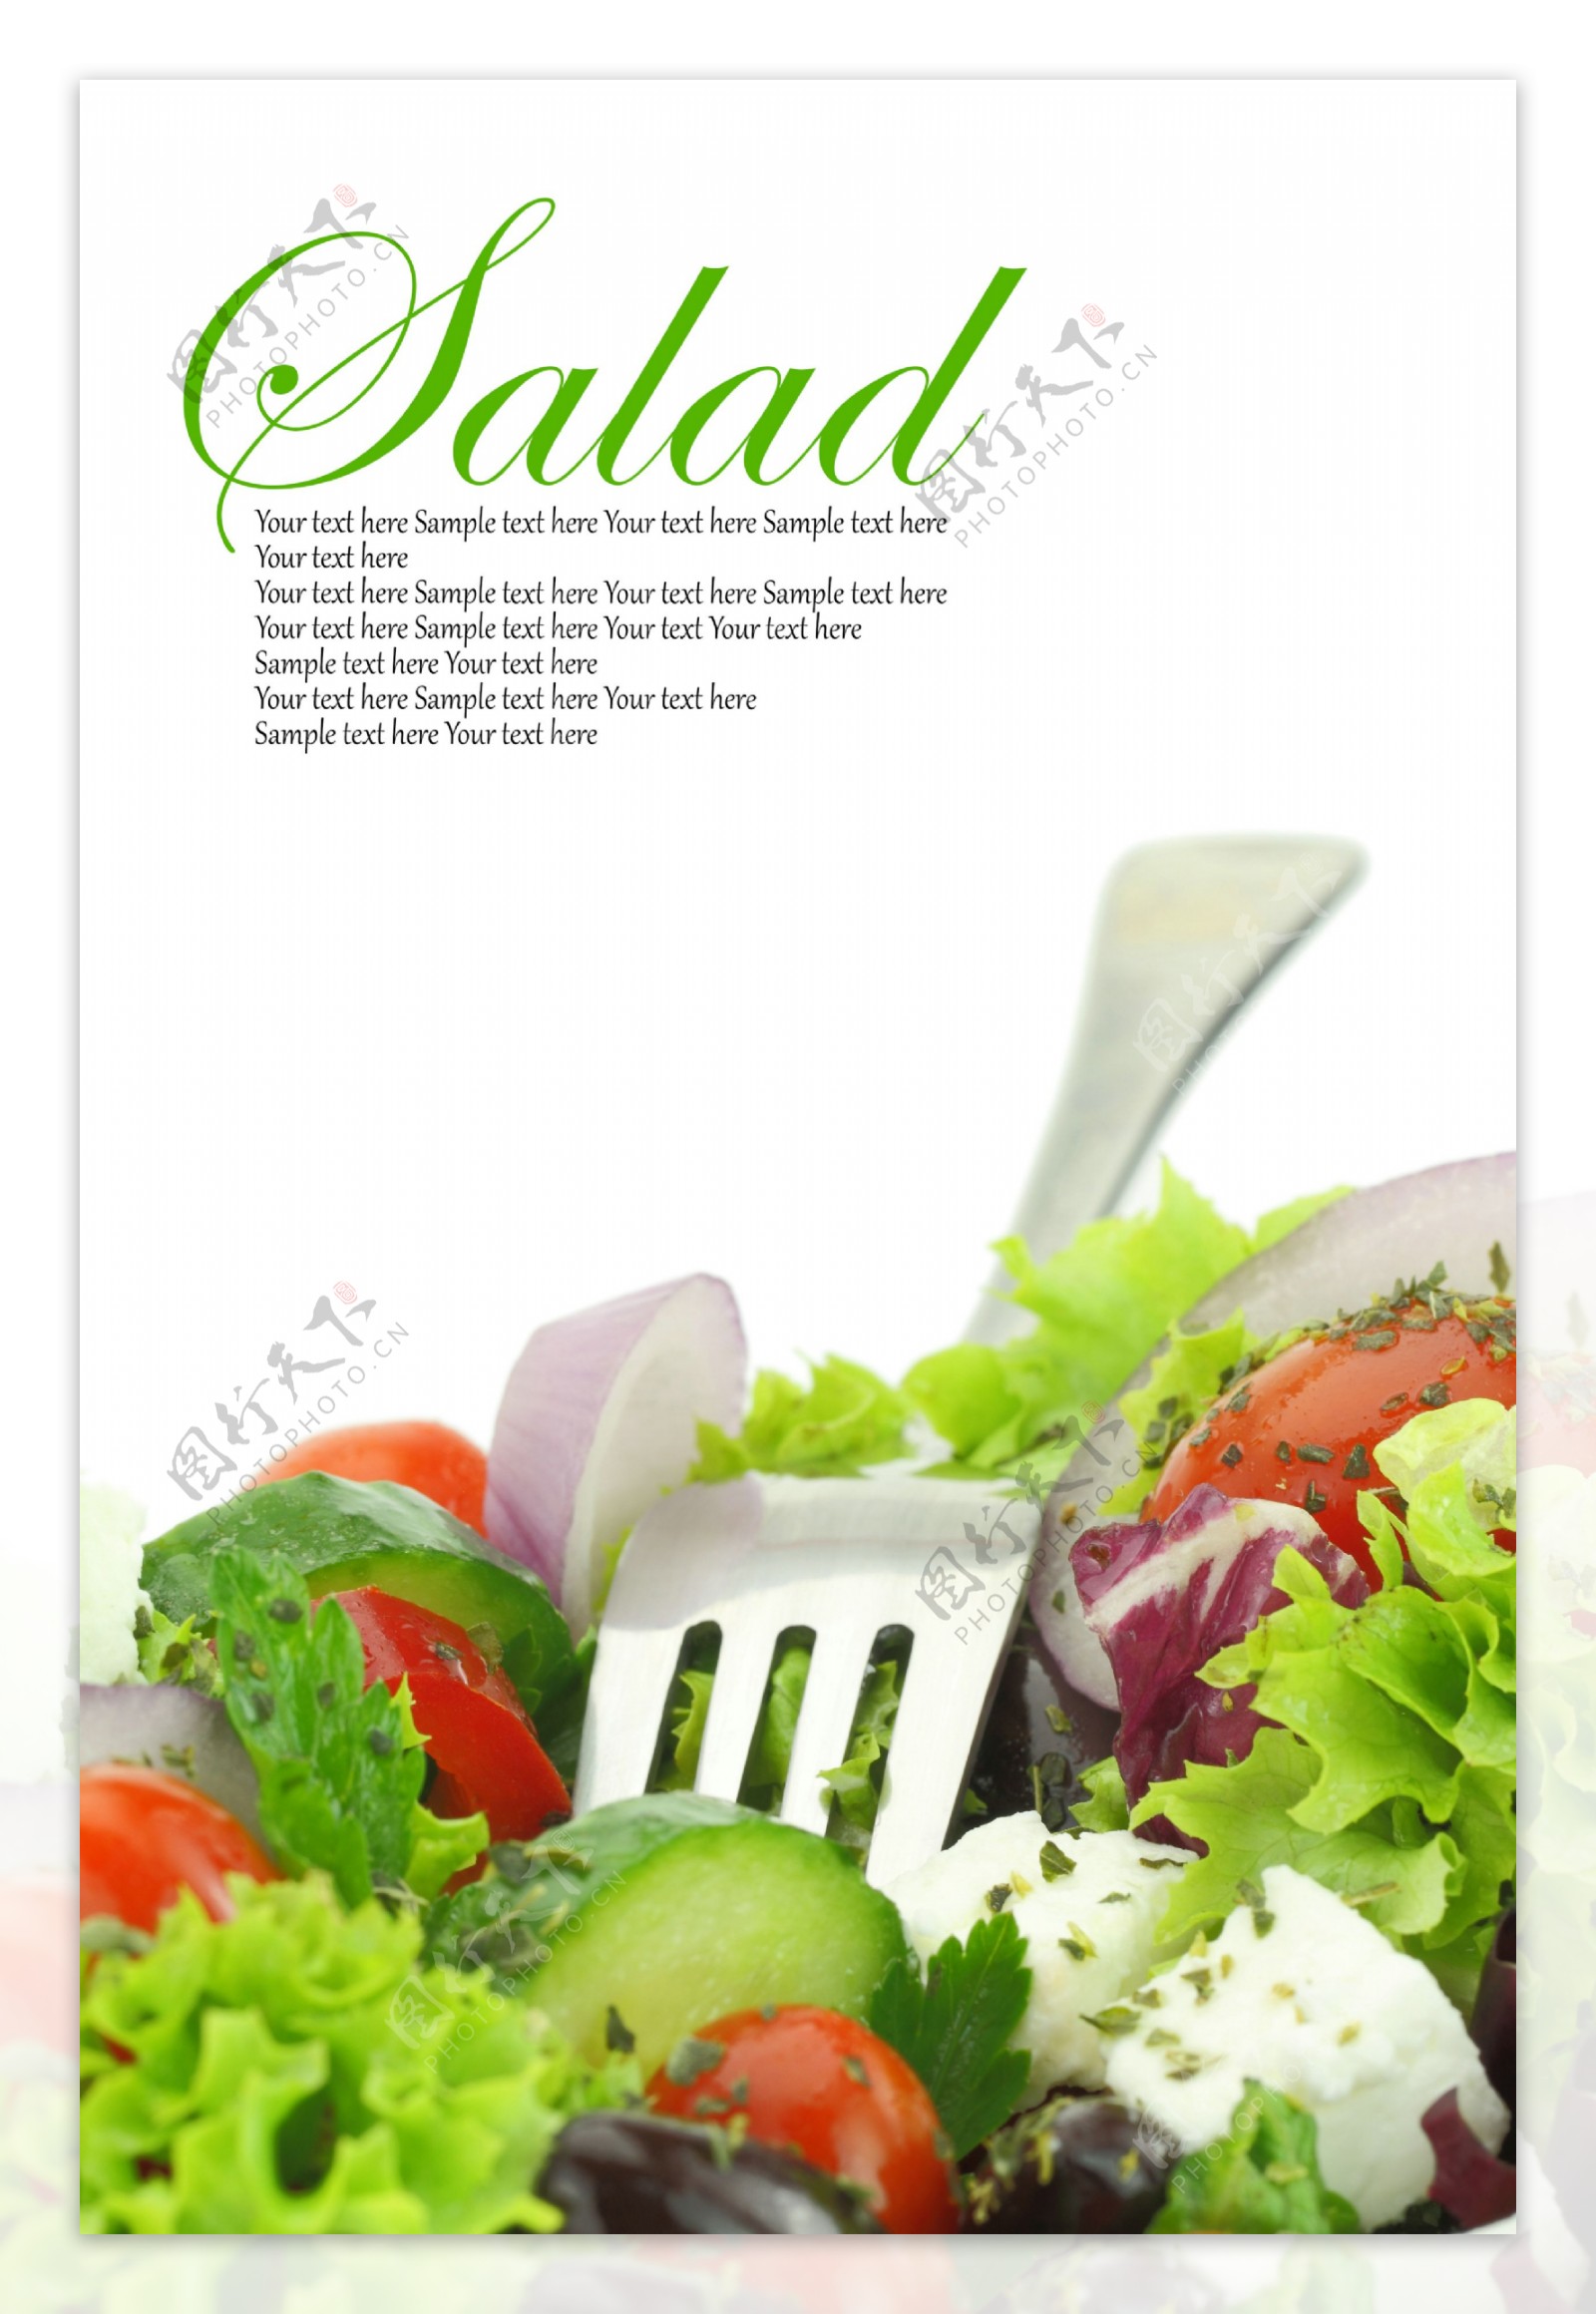 叉子和蔬菜沙拉图片